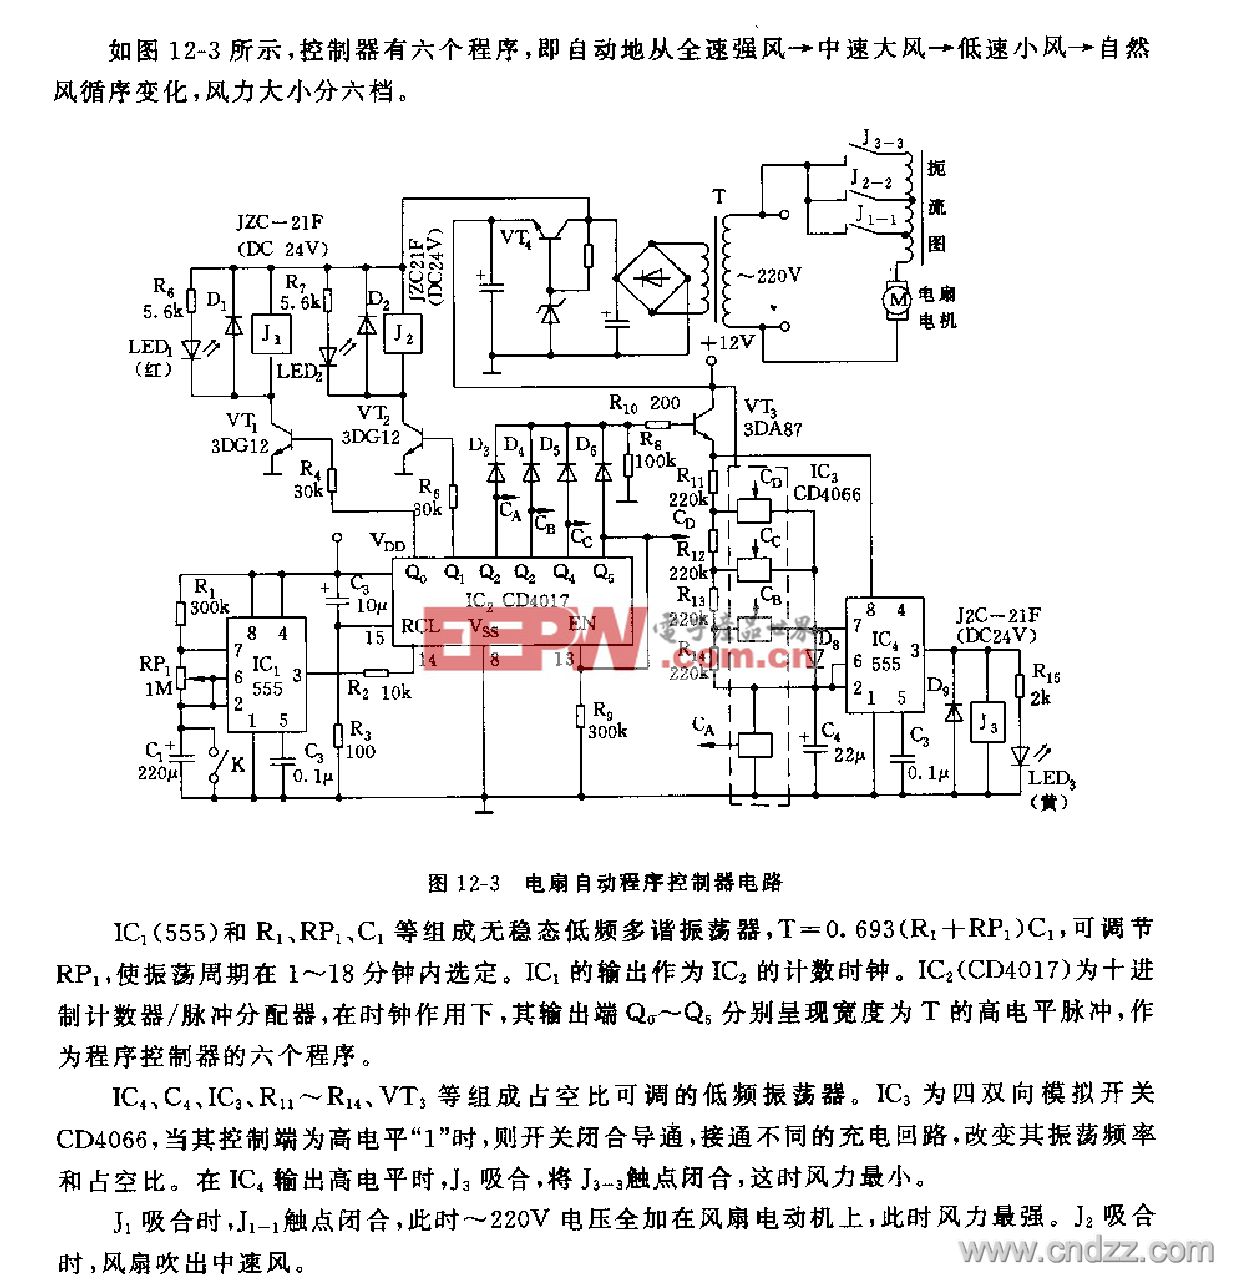 555电扇自动程序控制器电路